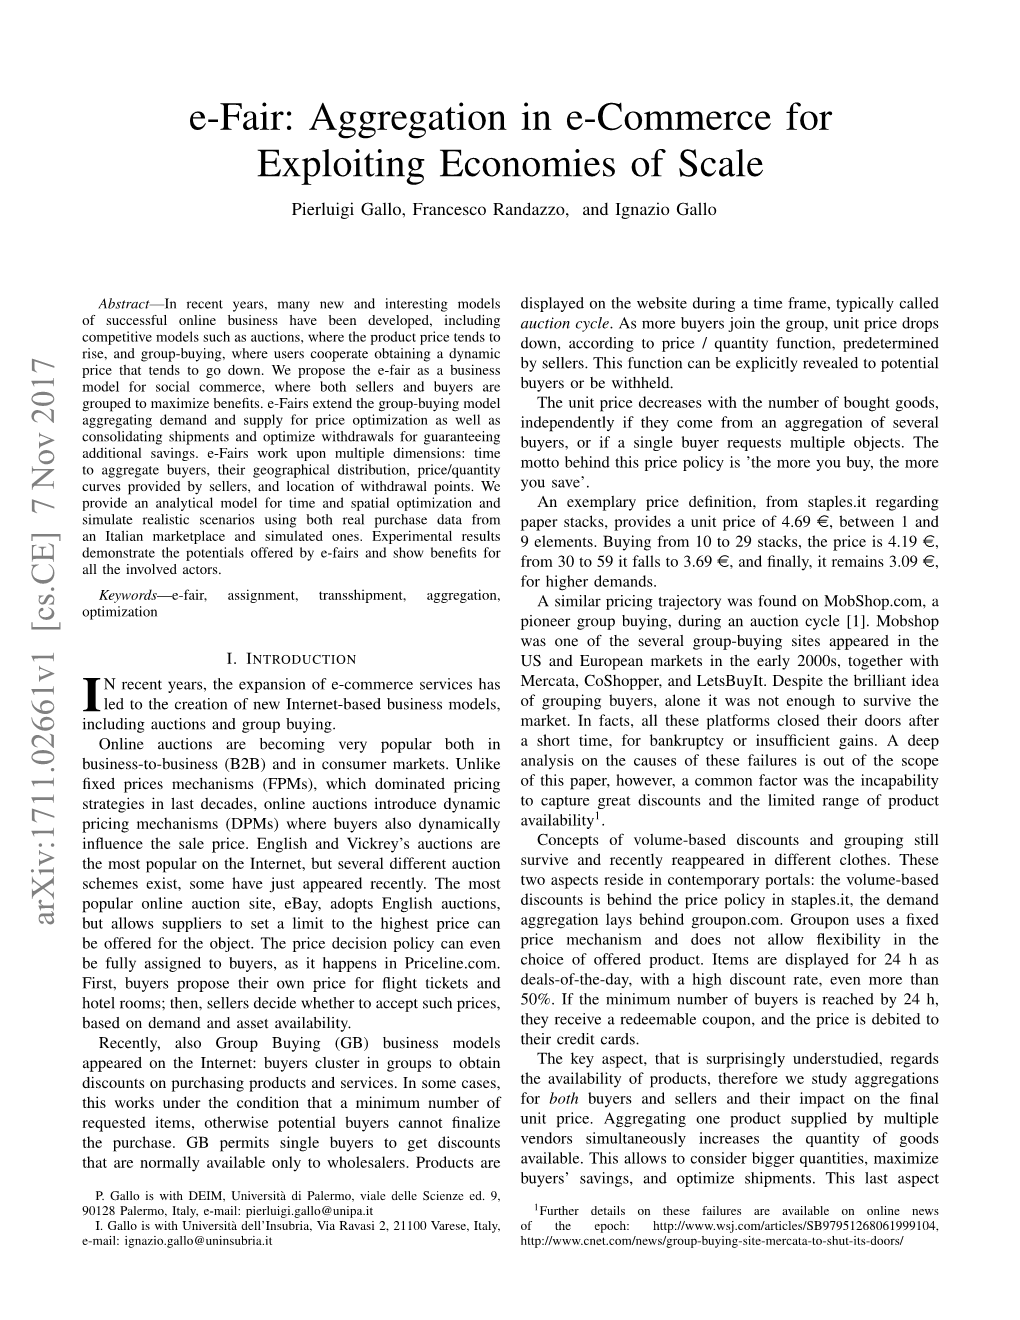 Aggregation in E-Commerce for Exploiting Economies of Scale Pierluigi Gallo, Francesco Randazzo, and Ignazio Gallo